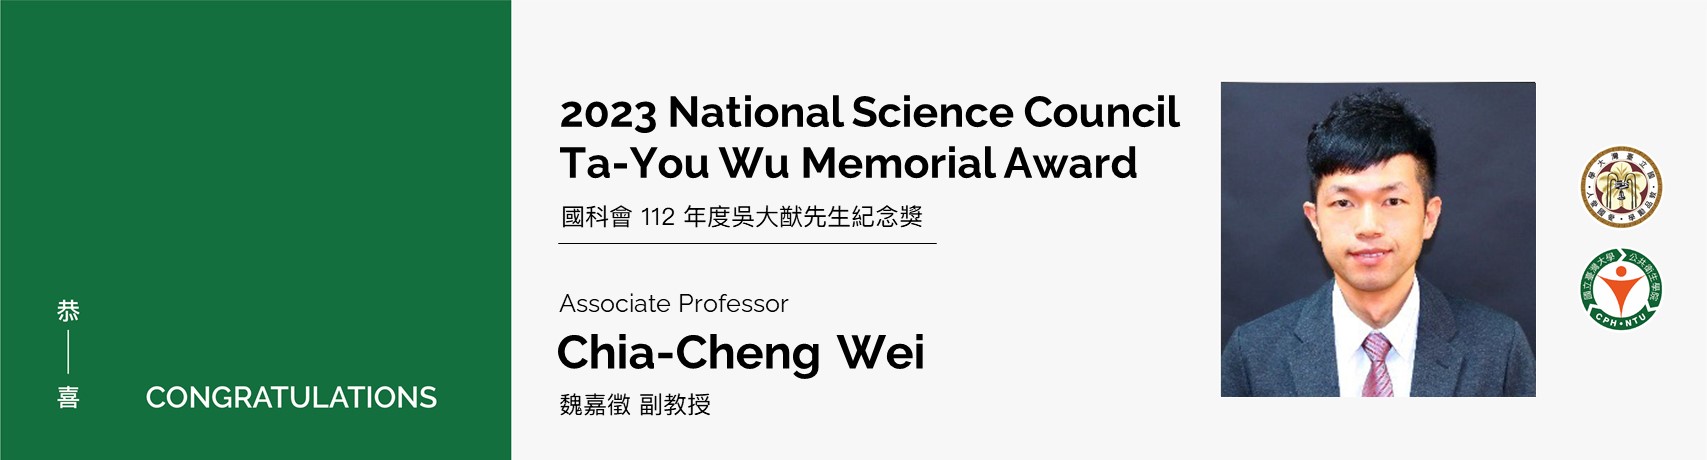 【Congratulations!】Associate Prof. Chia-Cheng Wei awarded 2023 Ta-You Wu Memorial Award from National Science Council